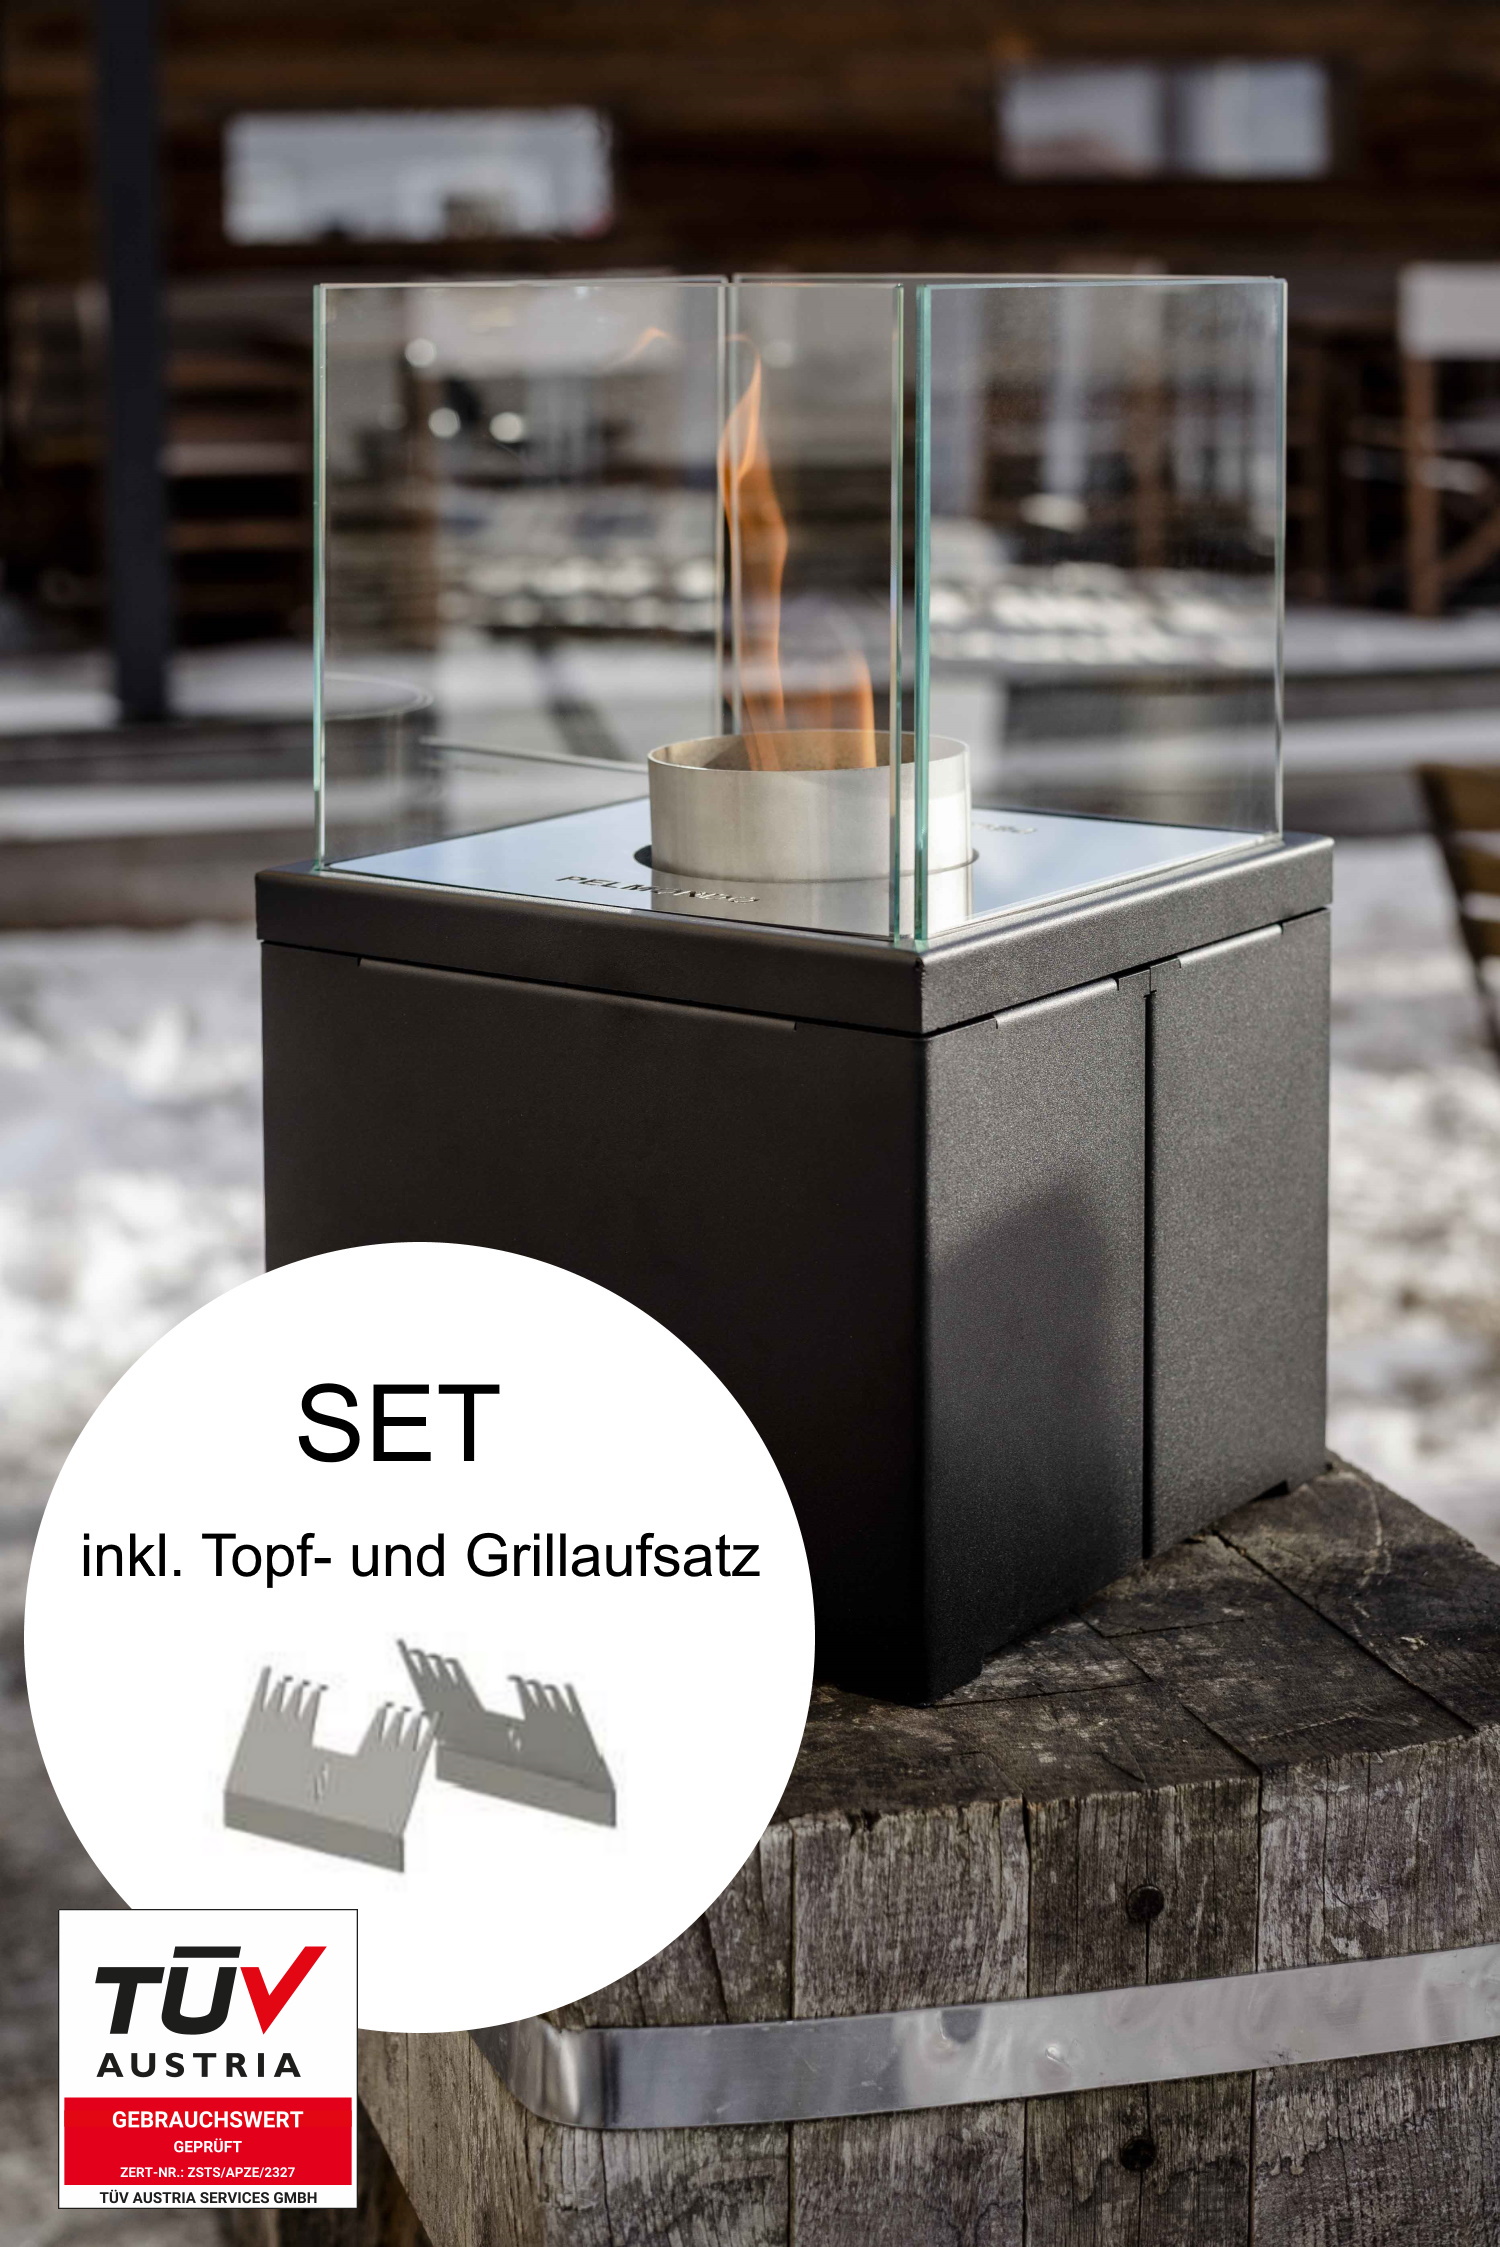 Pellet Firecube Q-Style-Set inkl. Topf- und Grillaufsatz 1,5 kW